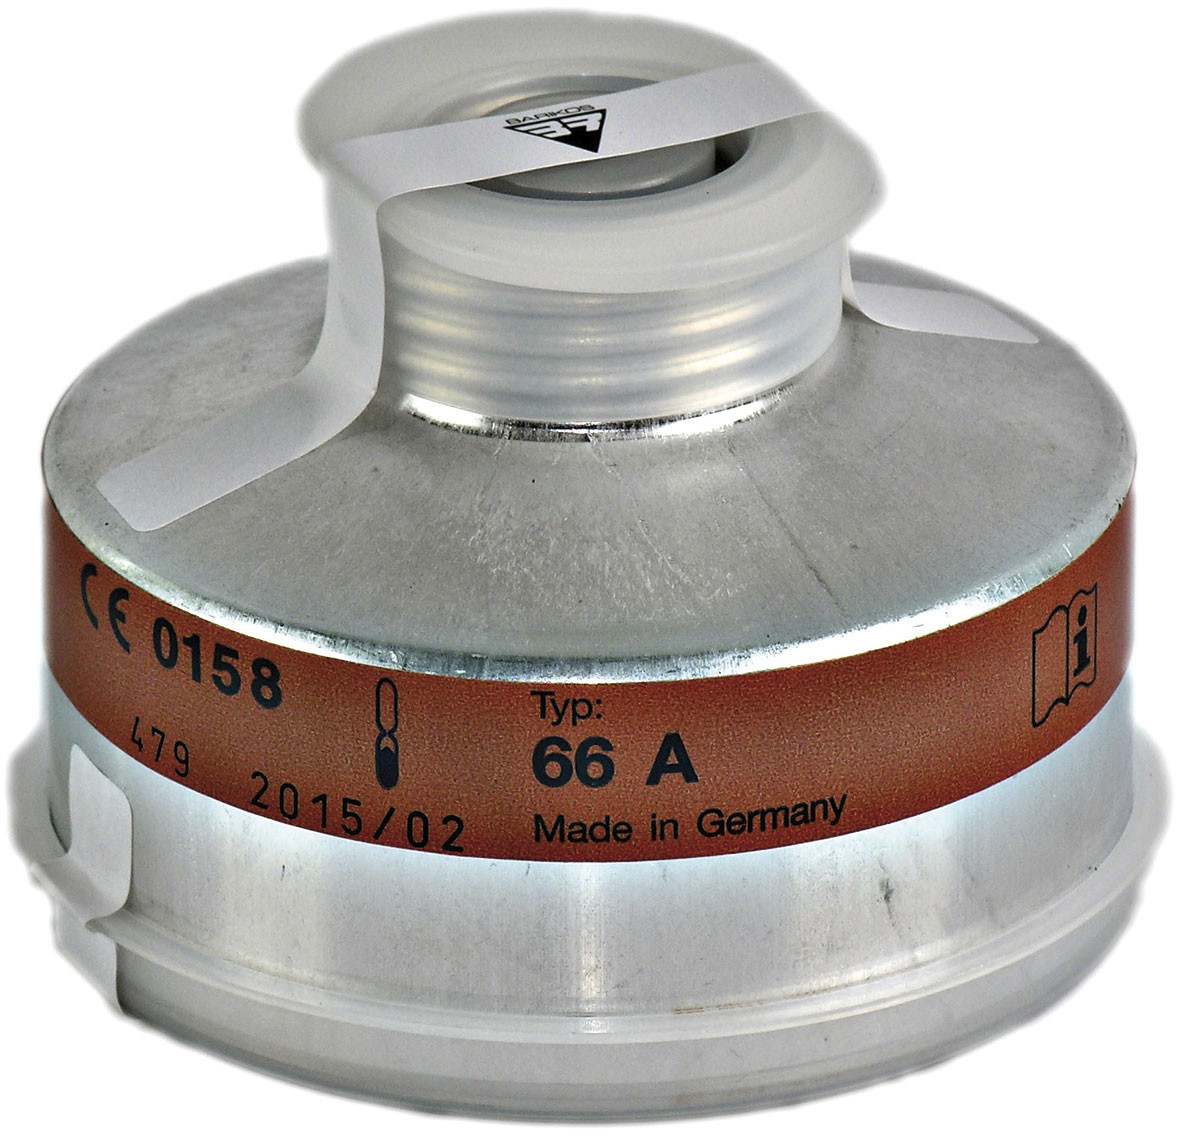 Filtro respiratorio rosca para gases nitrosos y partículas. Clase protección: NO-P3. BARIKOS